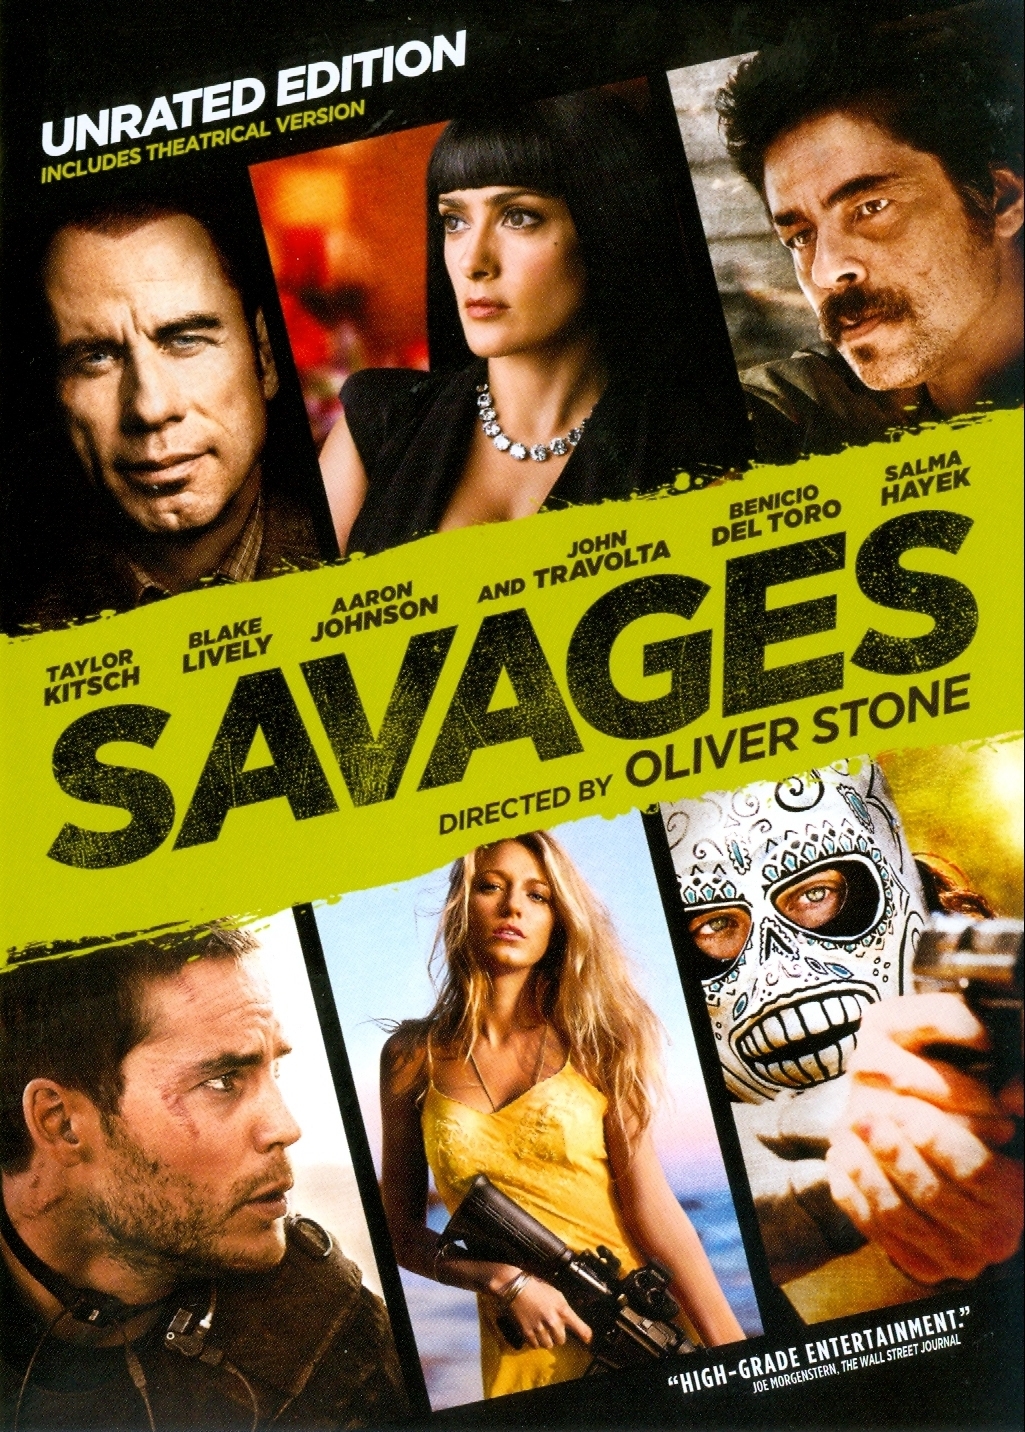  فیلم سینمایی Savages: The Interrogations با حضور جان تراولتا، Taylor Kitsch، بنیسیو دل تورو، Salma Hayek، آرون تیلور جانسون و بلیک لیولی